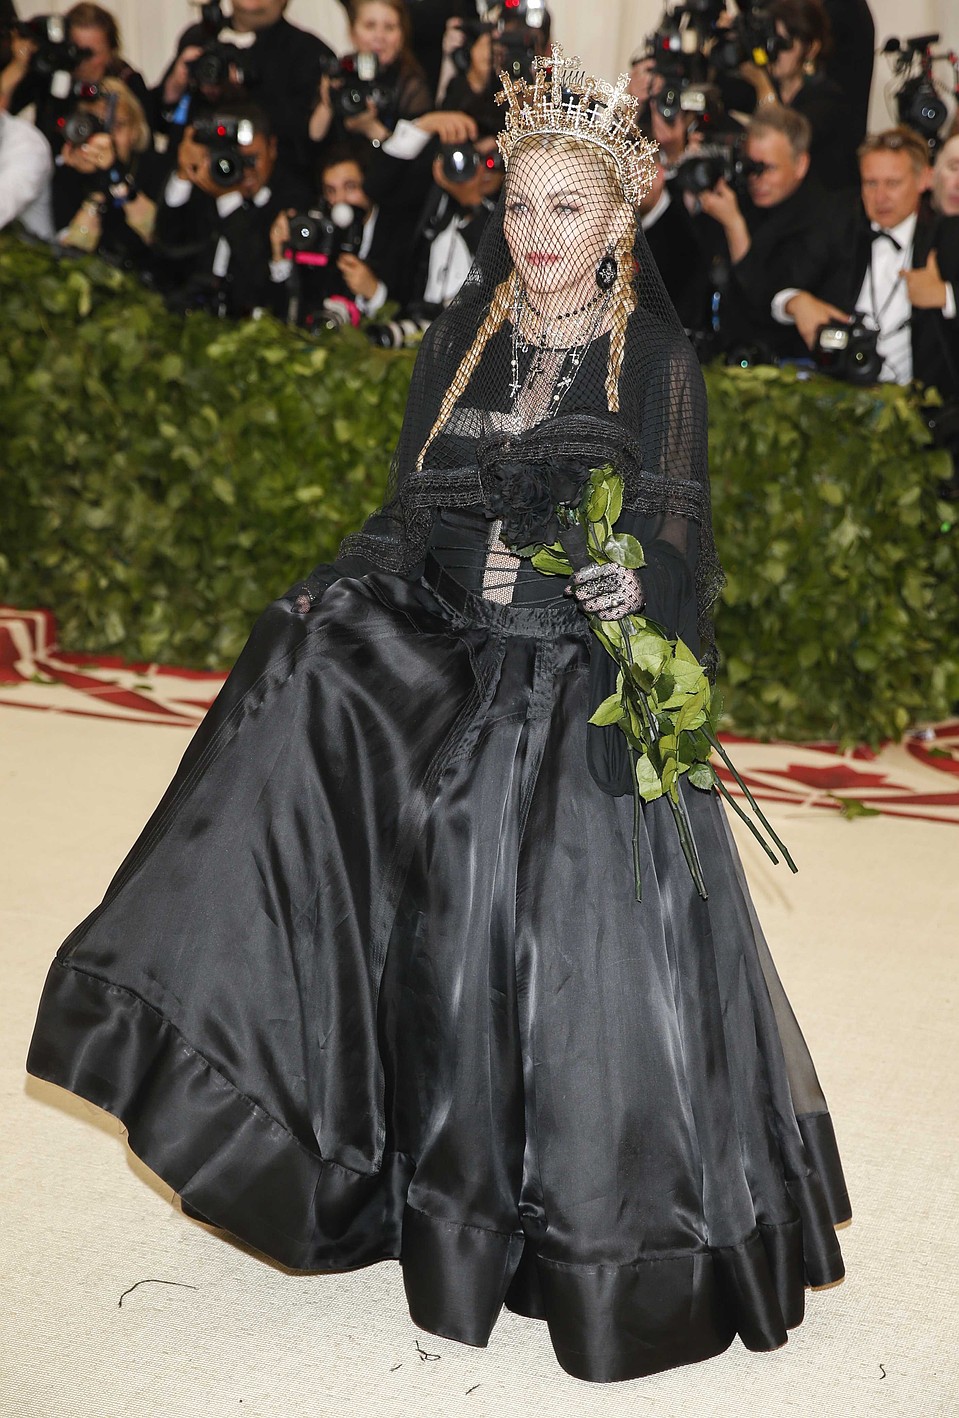 Мадонна и ее черная роза - эмблема печали. Фото: REUTERS